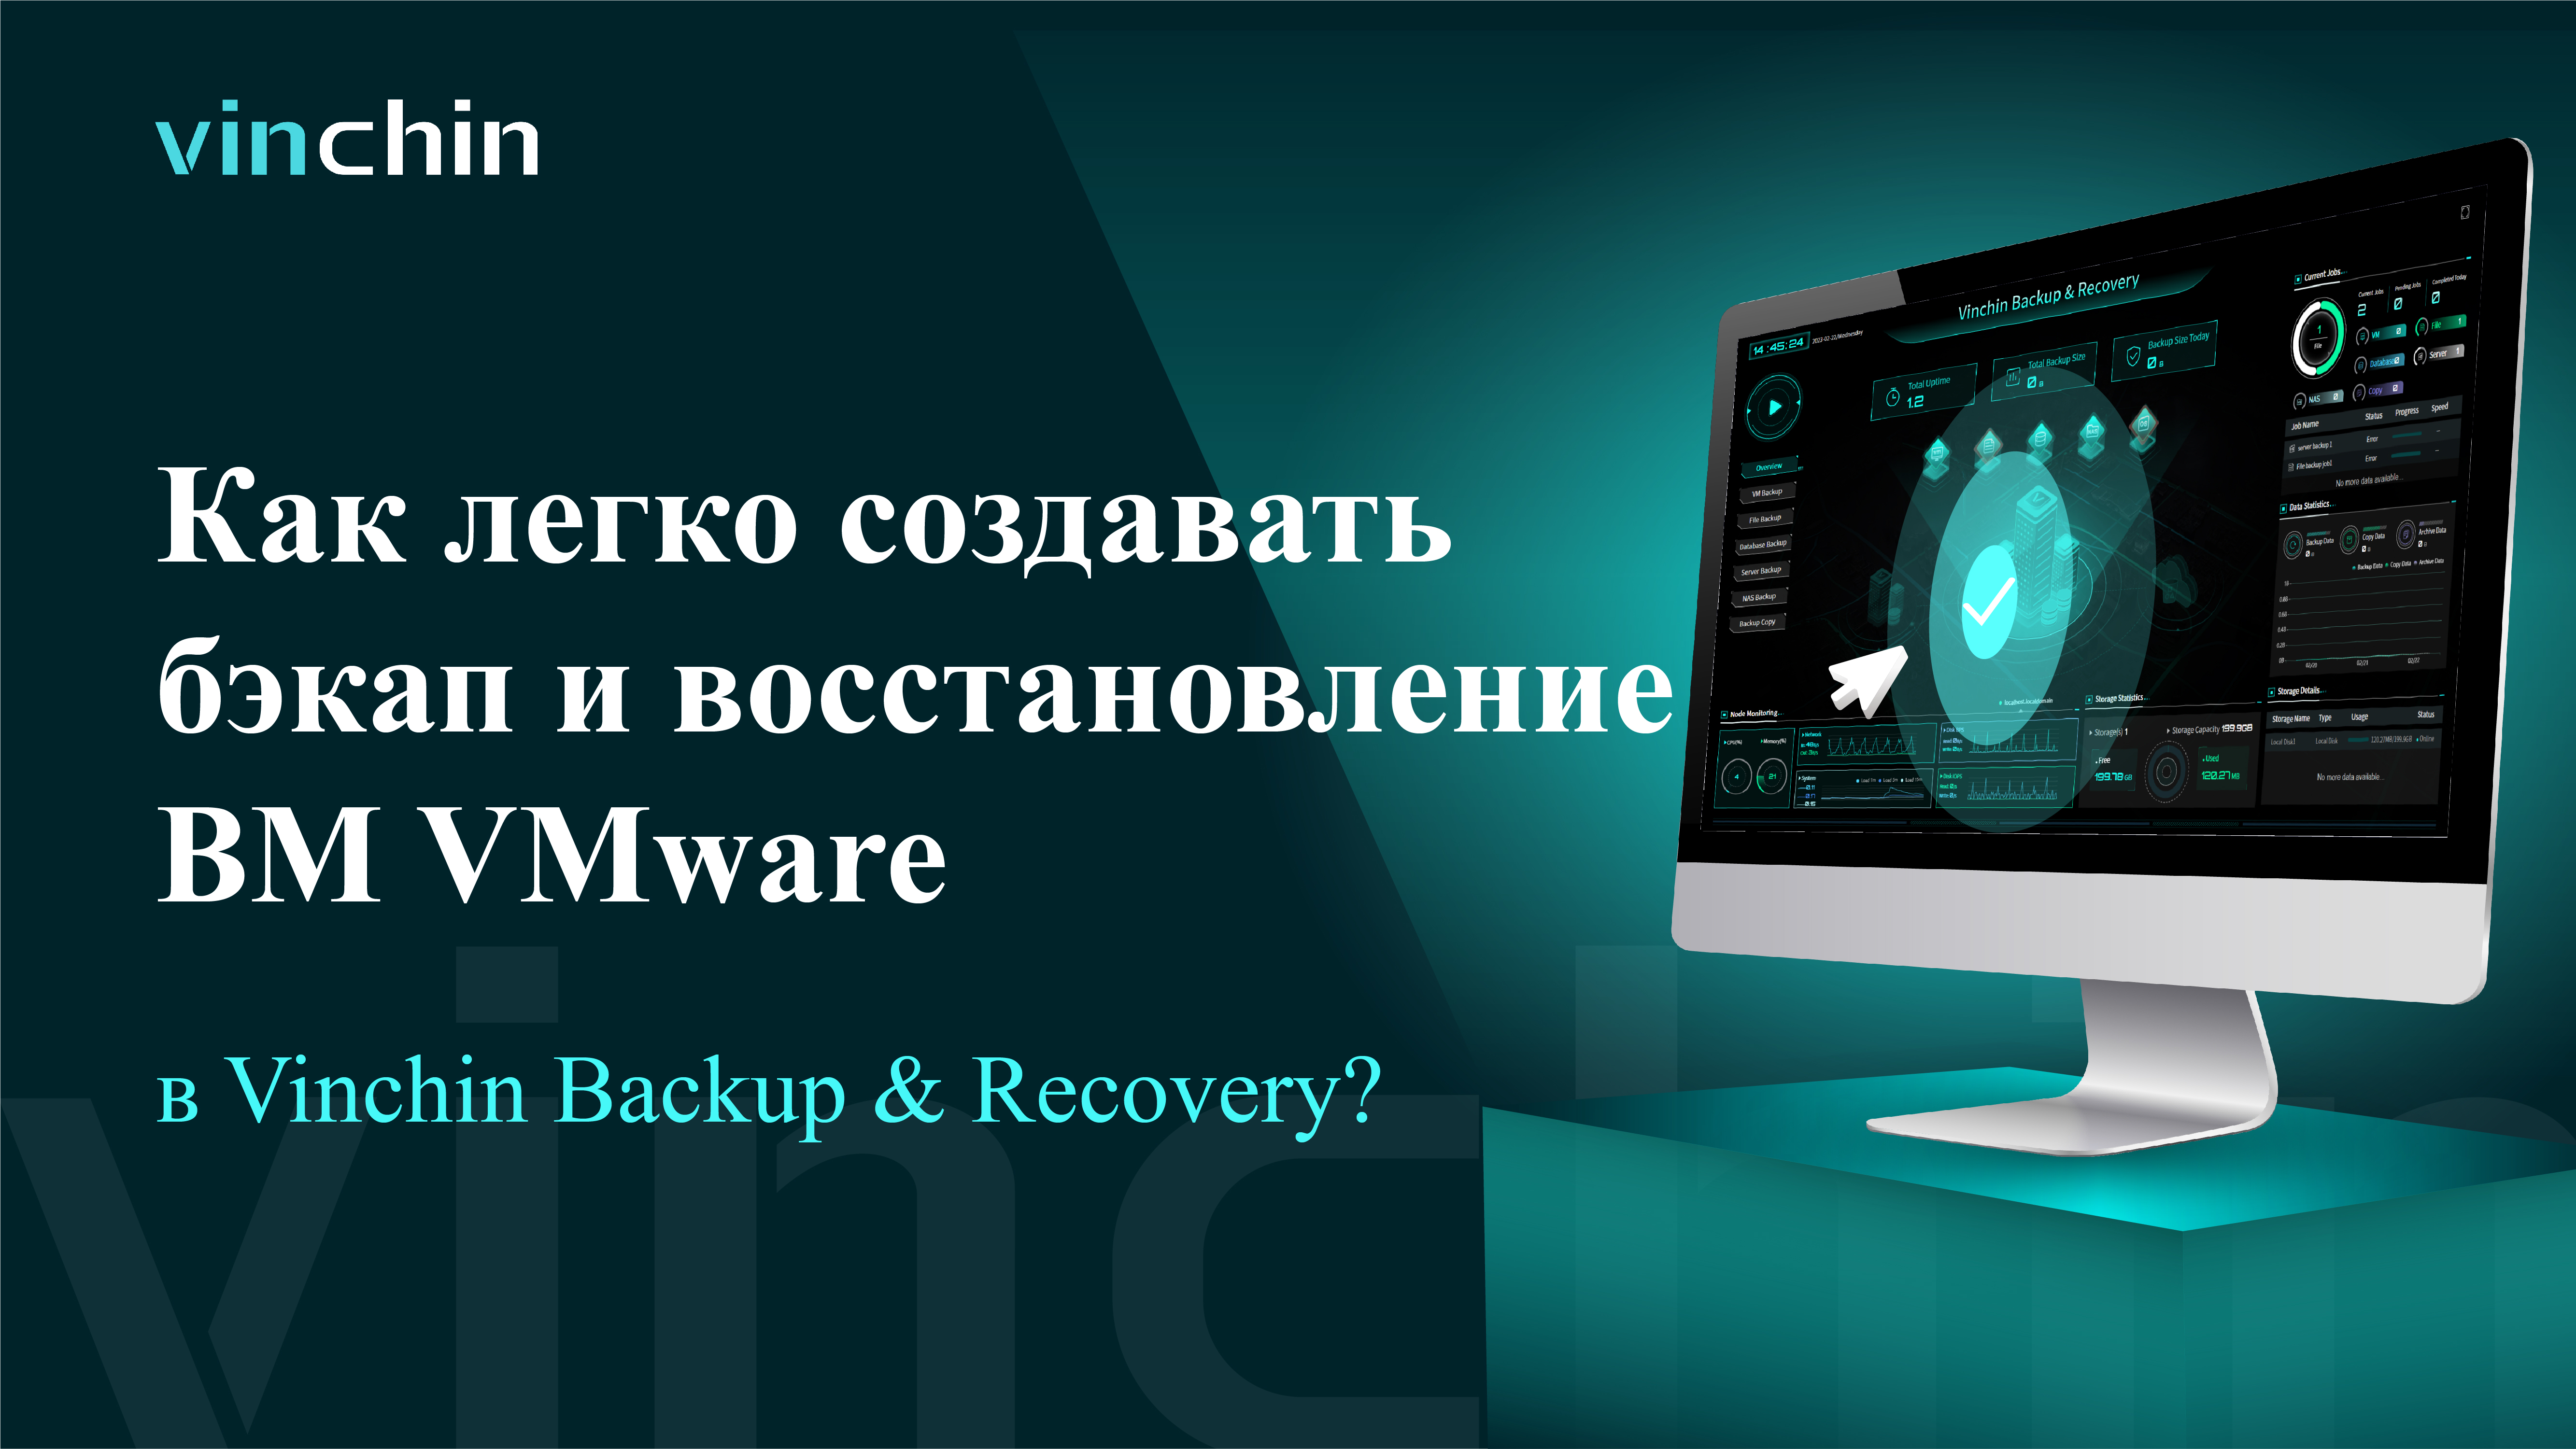 Видео для Бэкапа и Восстановления ВМ VMware